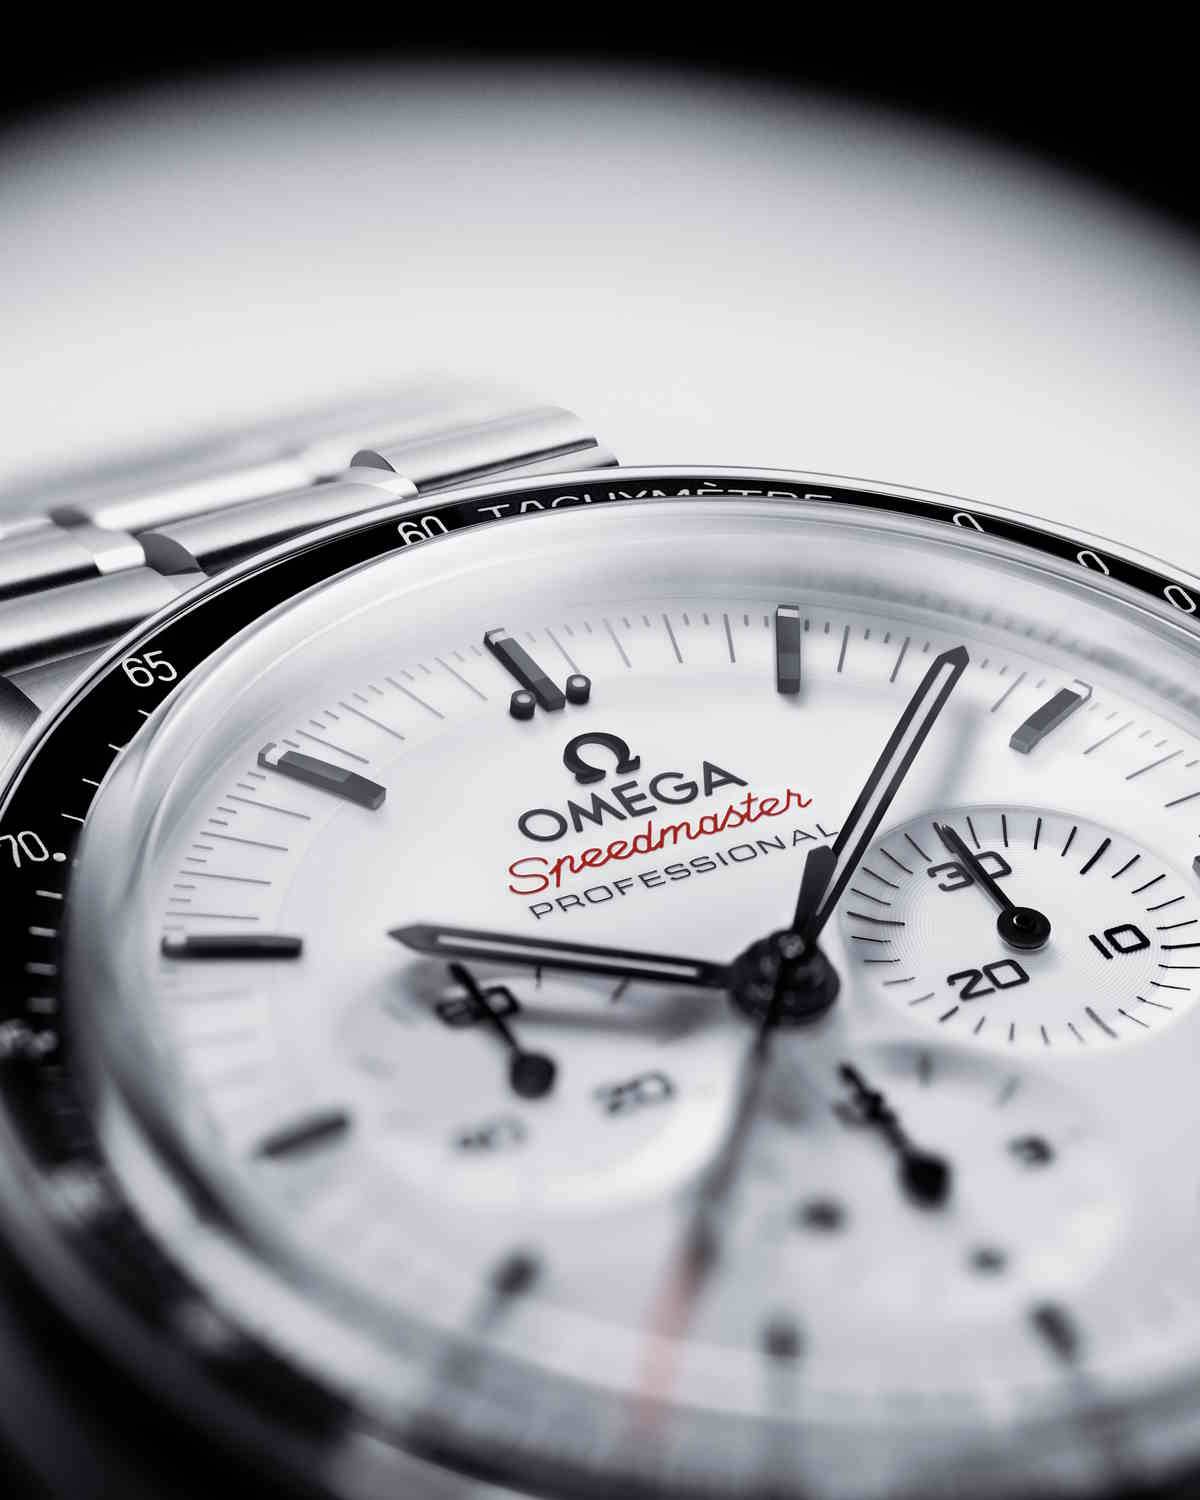 Nowy model kultowego zegarka Omega Moonwatch Speedmaster. Po prototypie ALASKA I, który nosili uczestnicy misji Apollo 13, przyszła kolej na zegarek Jamesa Bonda gotowy na najtrudniejszą misję, nawet księżycową.